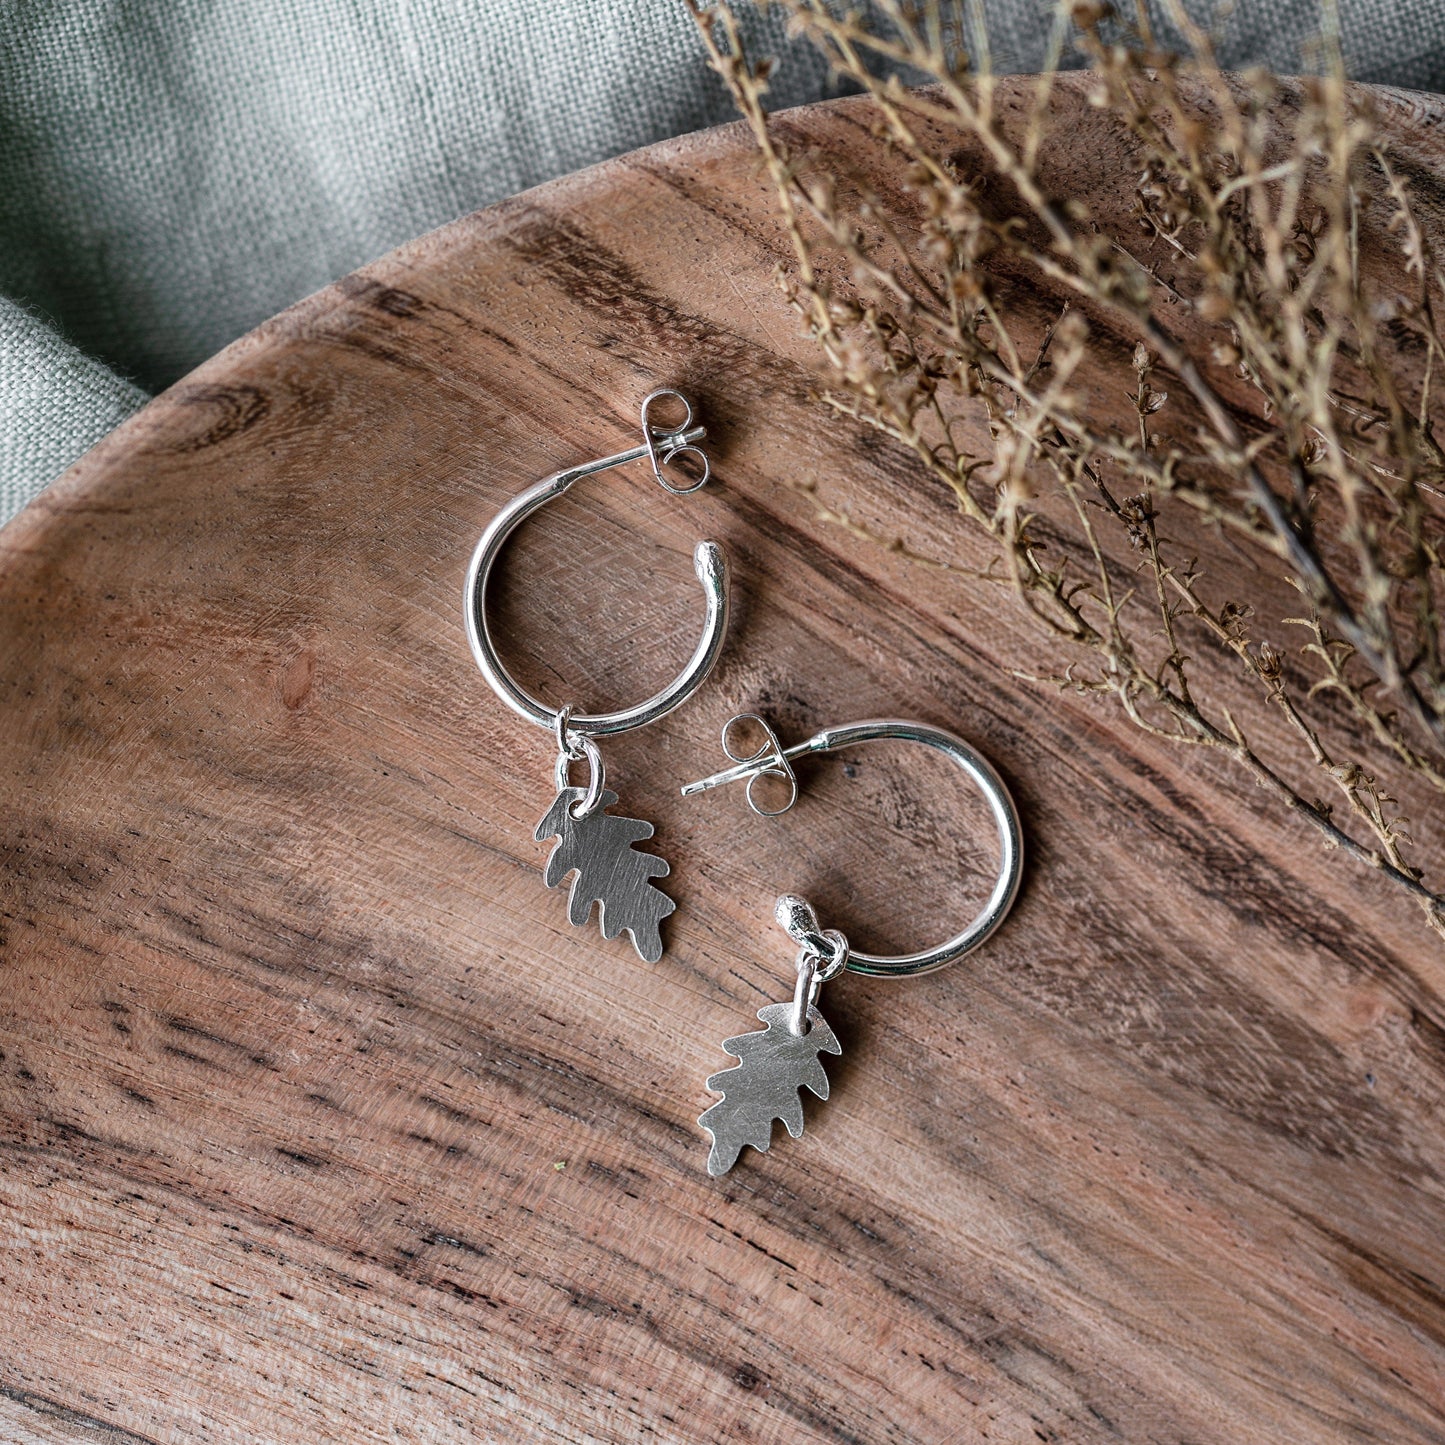 Silver Leaf Hoop Earrings Handmade by Anna Calvert Jewellery in the UK